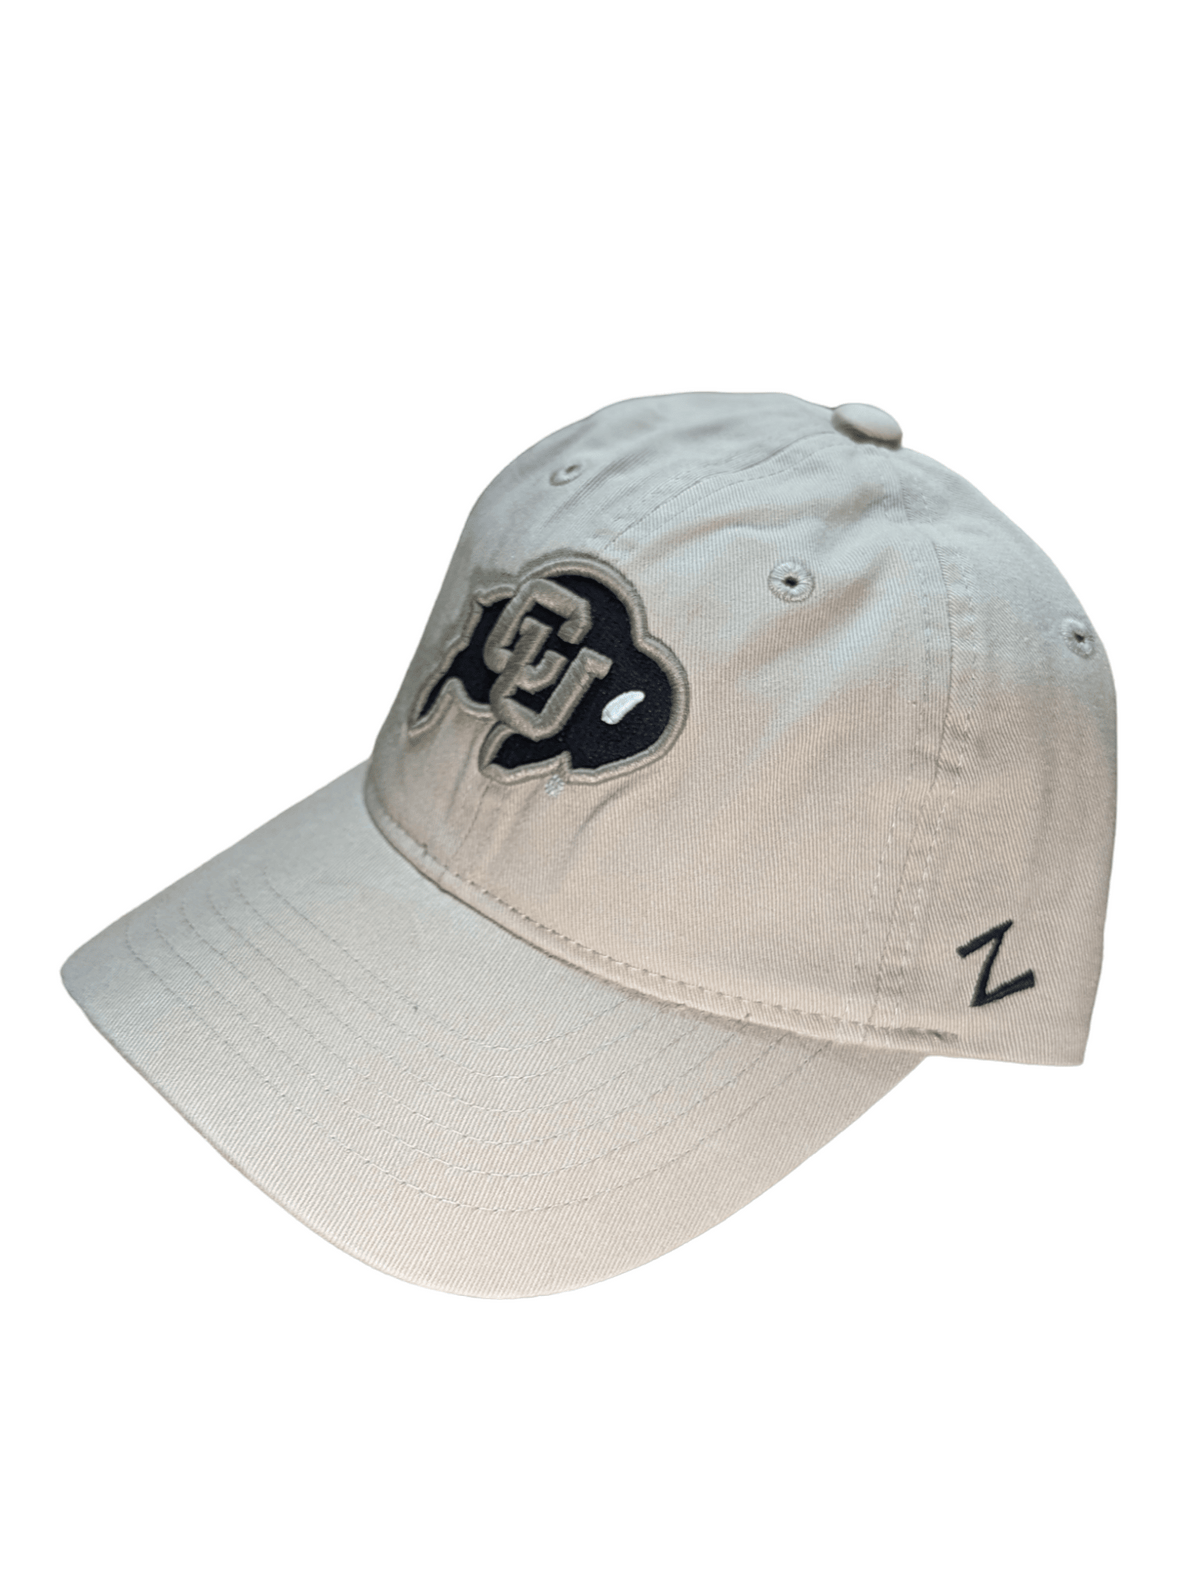 Zephyr Apparel & Accessories Colorado Buffalos Scholarship Adjustable Hat